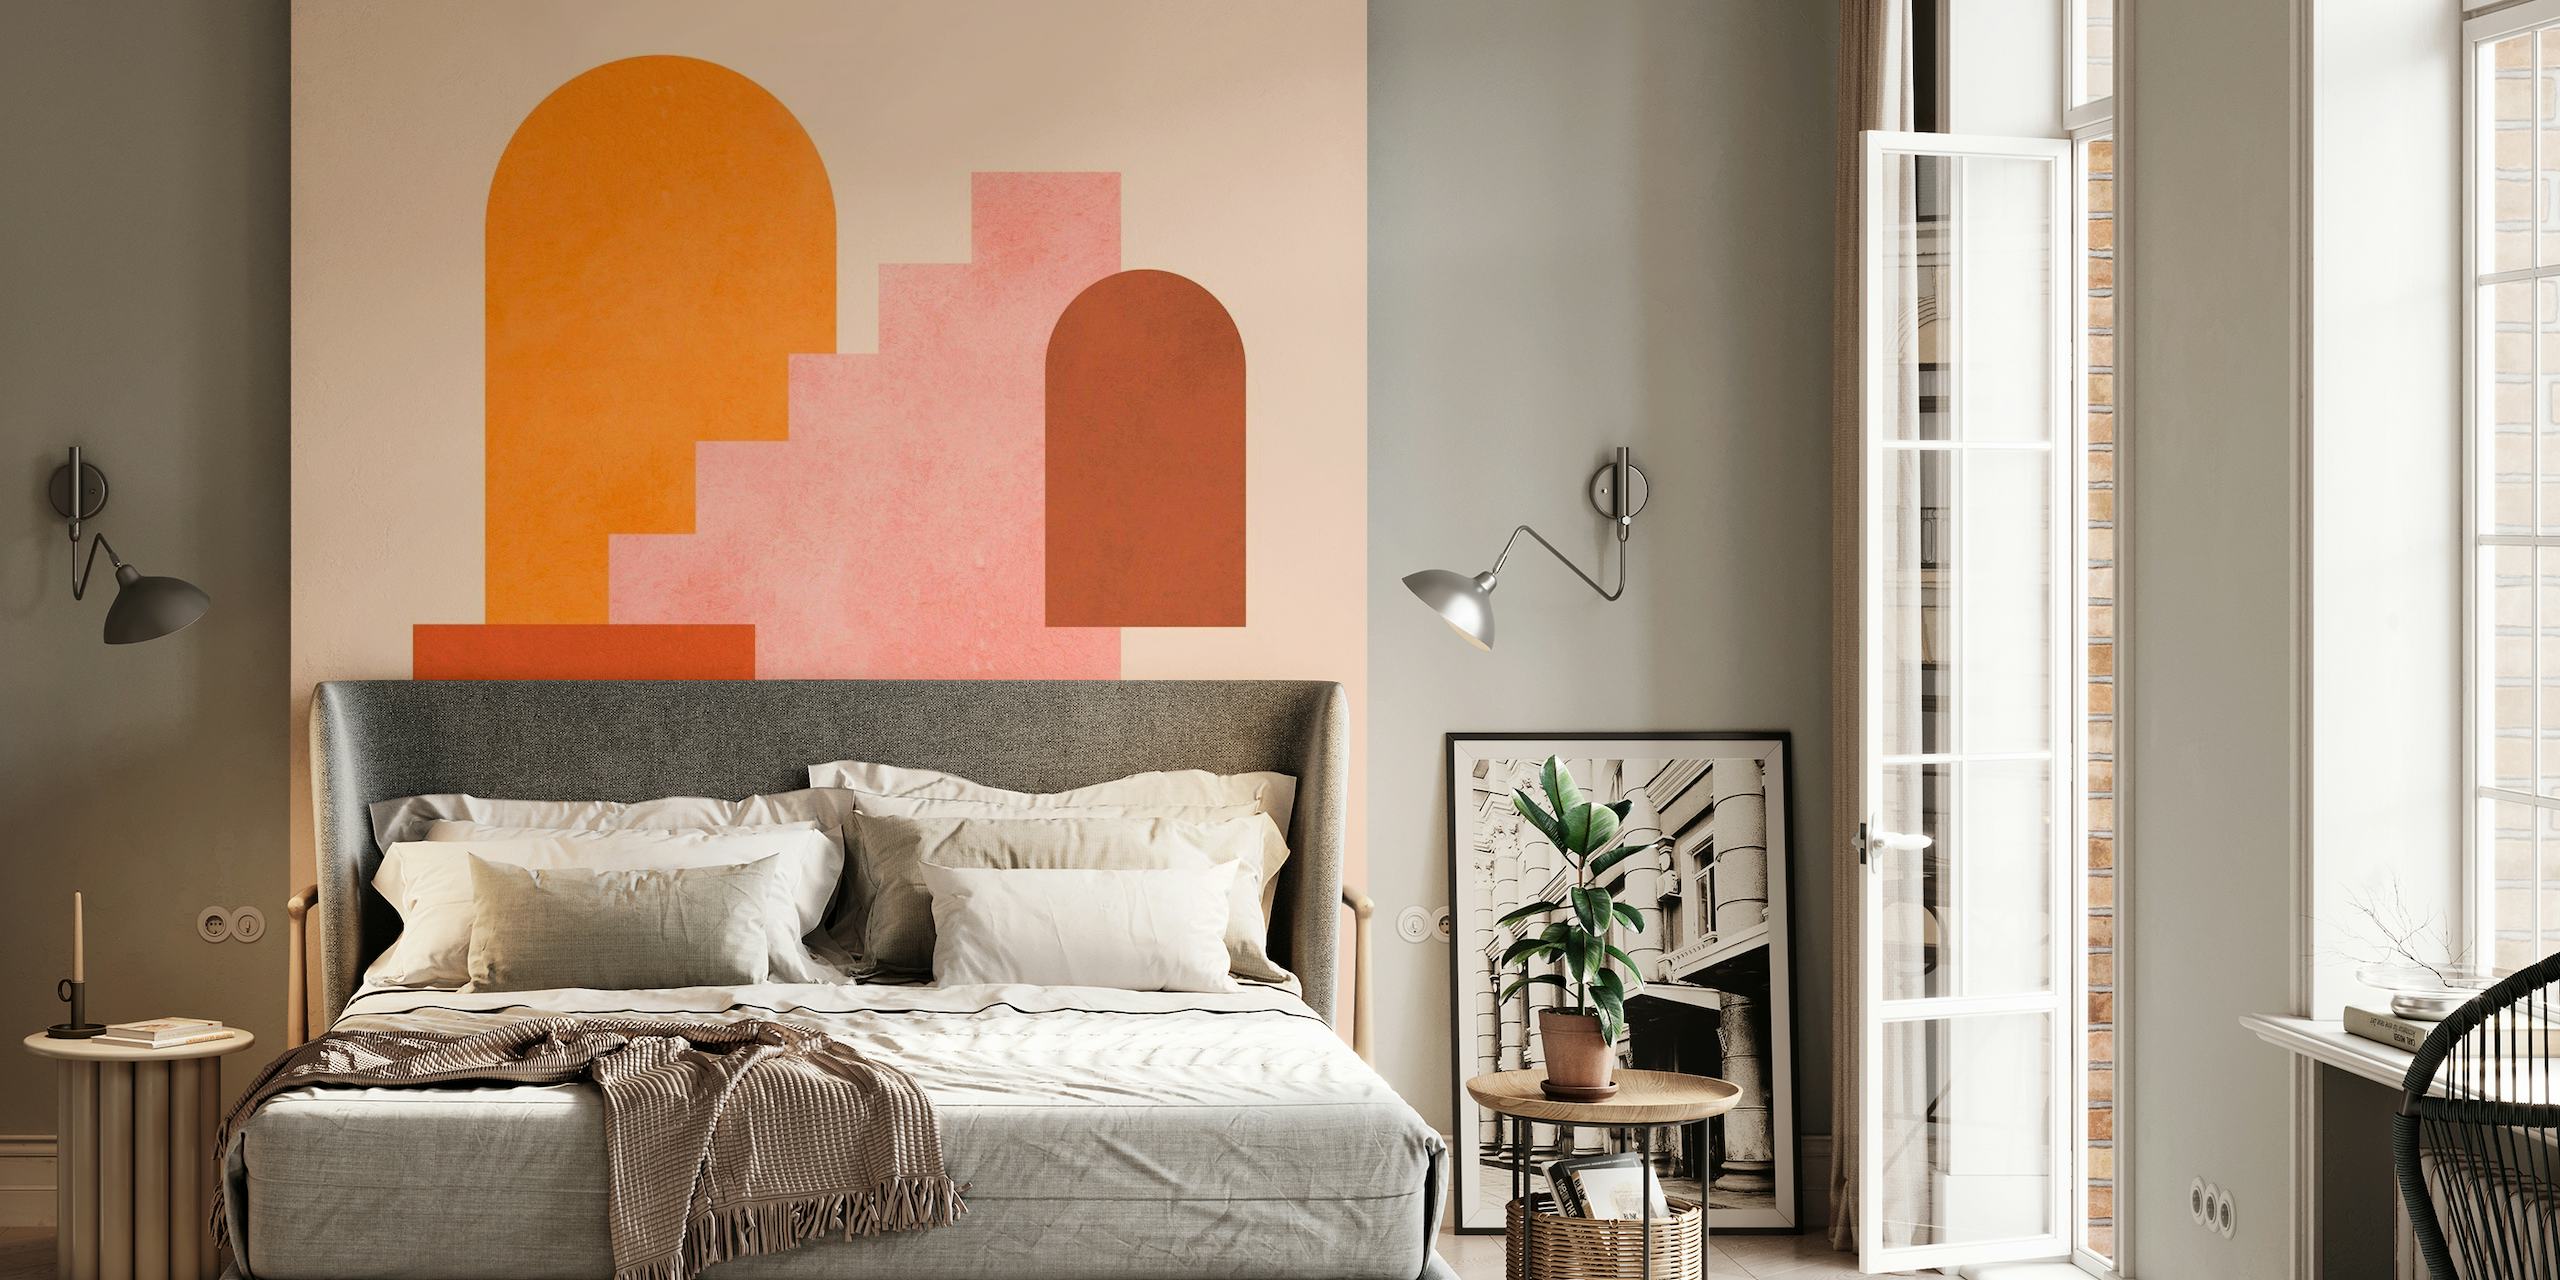 Wandbild mit abstrakten geometrischen Formen in Orange-, Rosa- und Terrakottatönen.